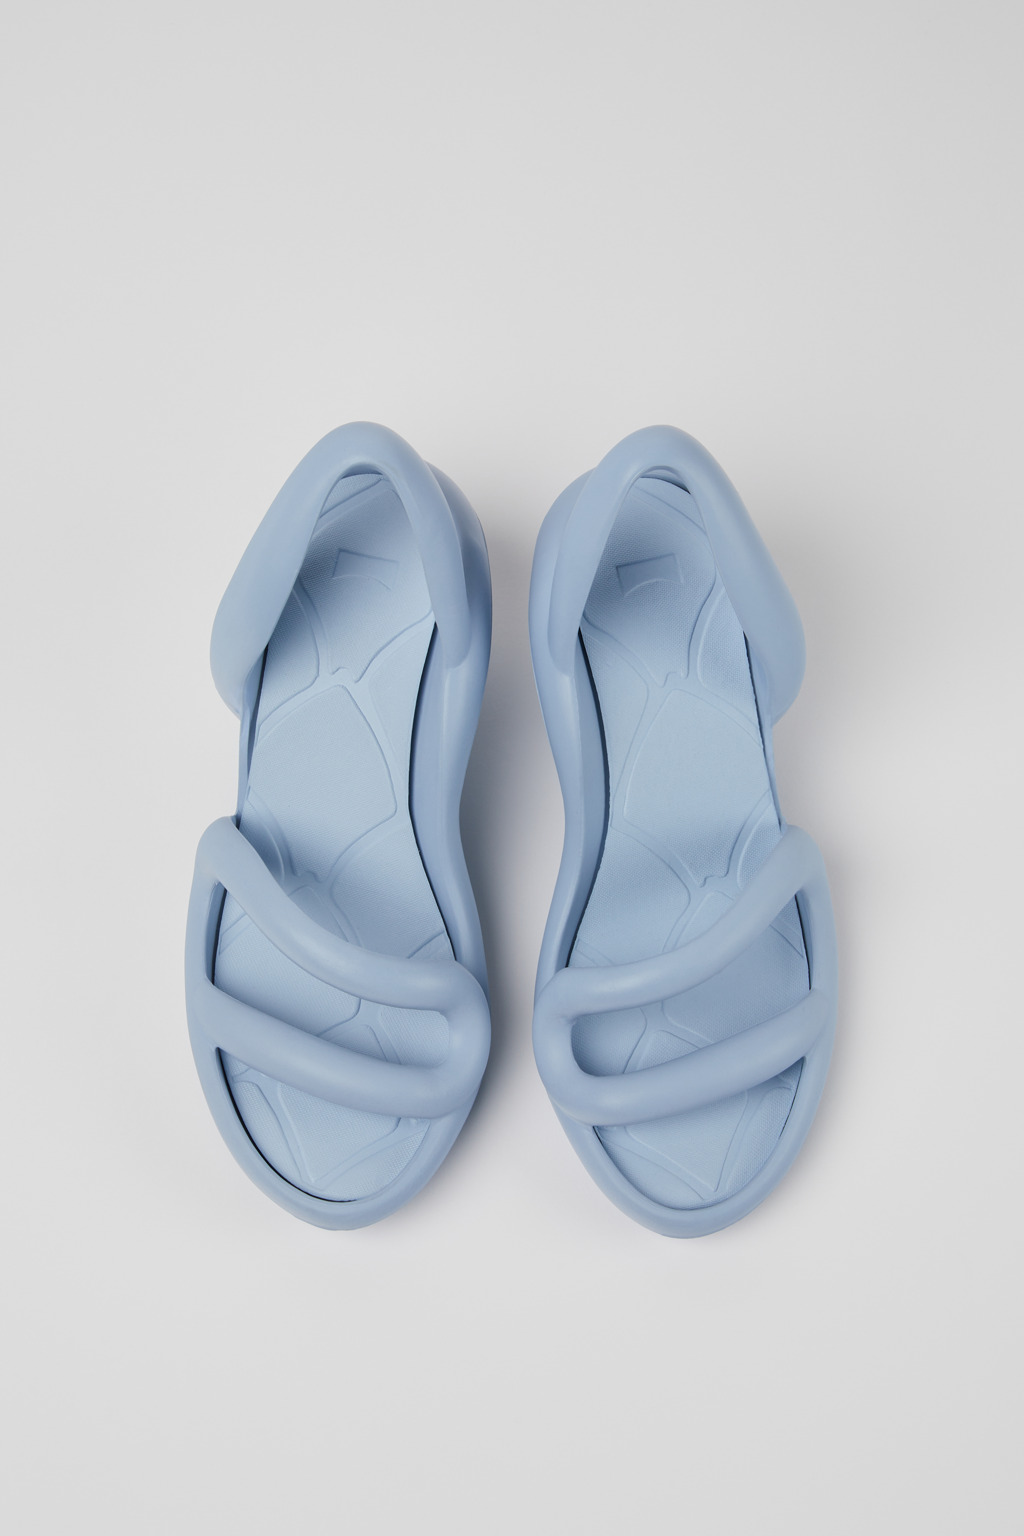 KOBARAH Blue Sandals for Women - Camper Shoes